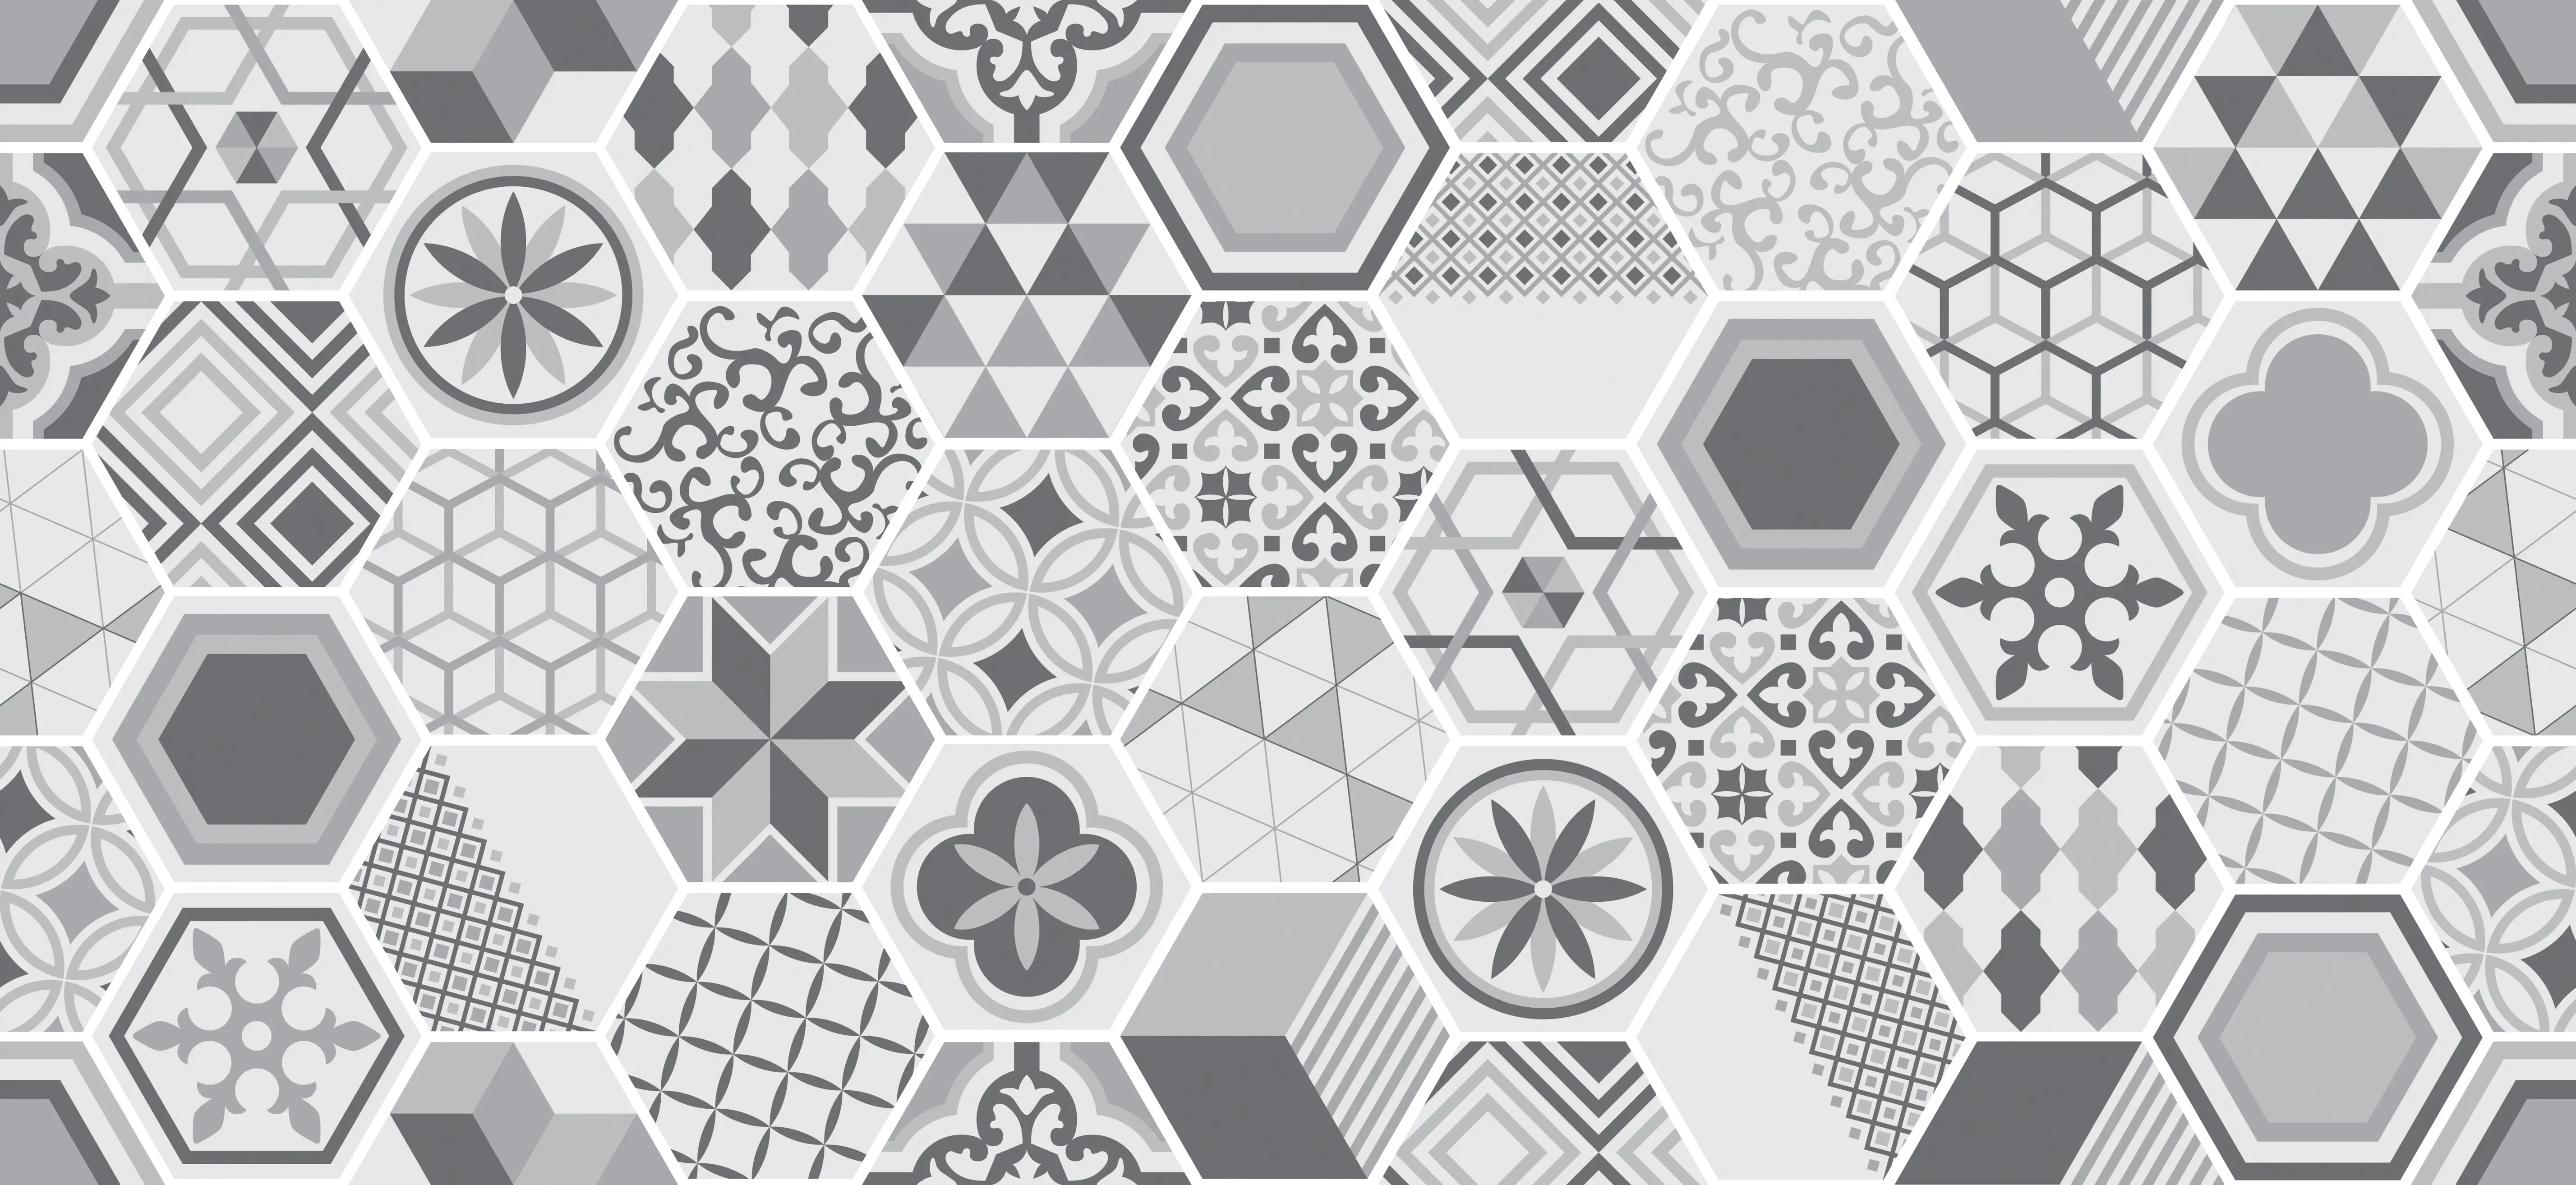 Płytki heksagonalne – sposób na oryginalną aranżację pomieszczeń